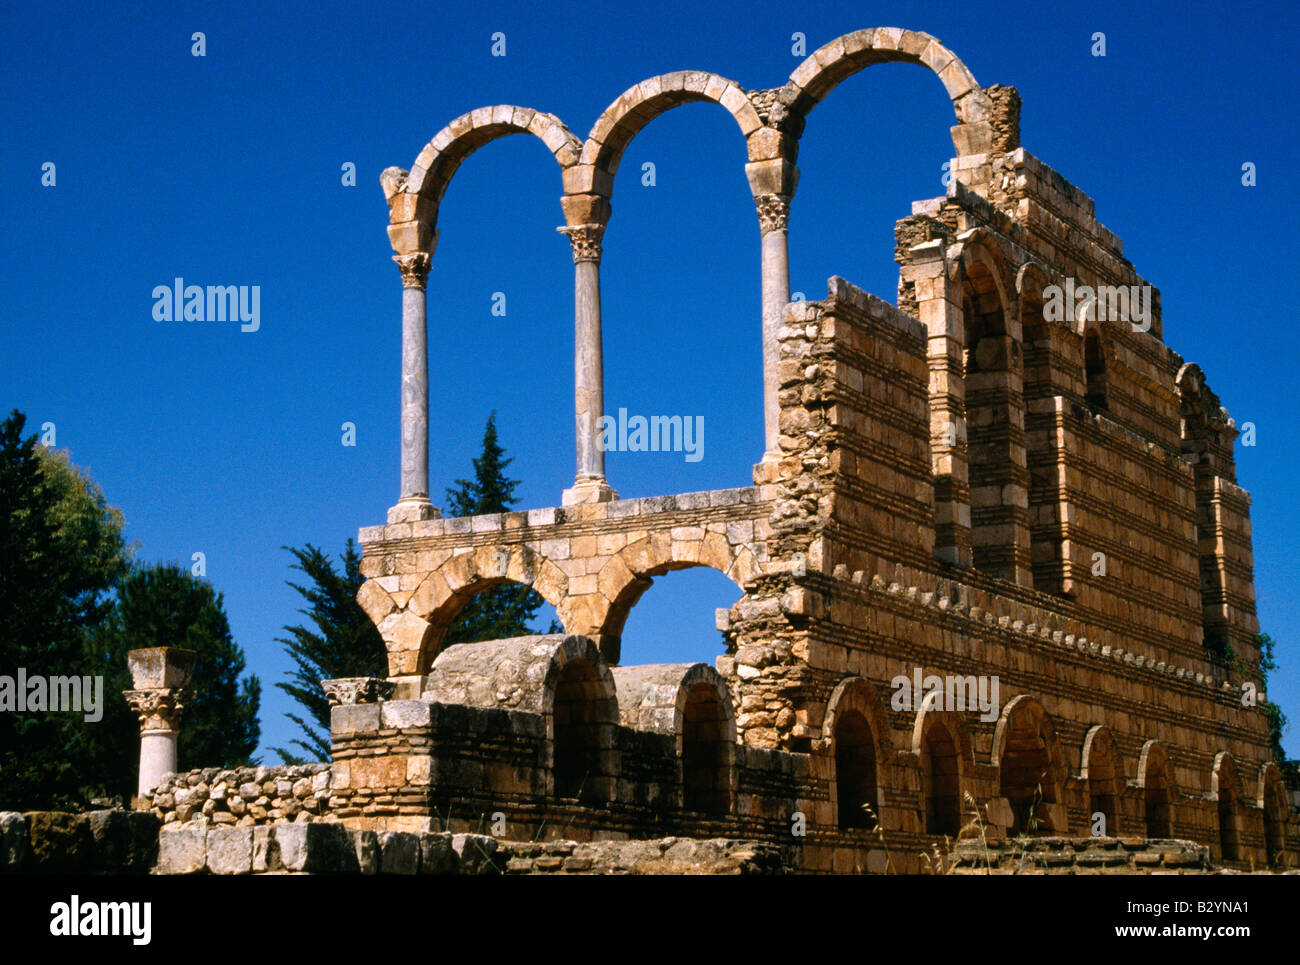 Anjar Liban ruines du palais Omeyyad site classé au patrimoine mondial de l'UNESCO Banque D'Images